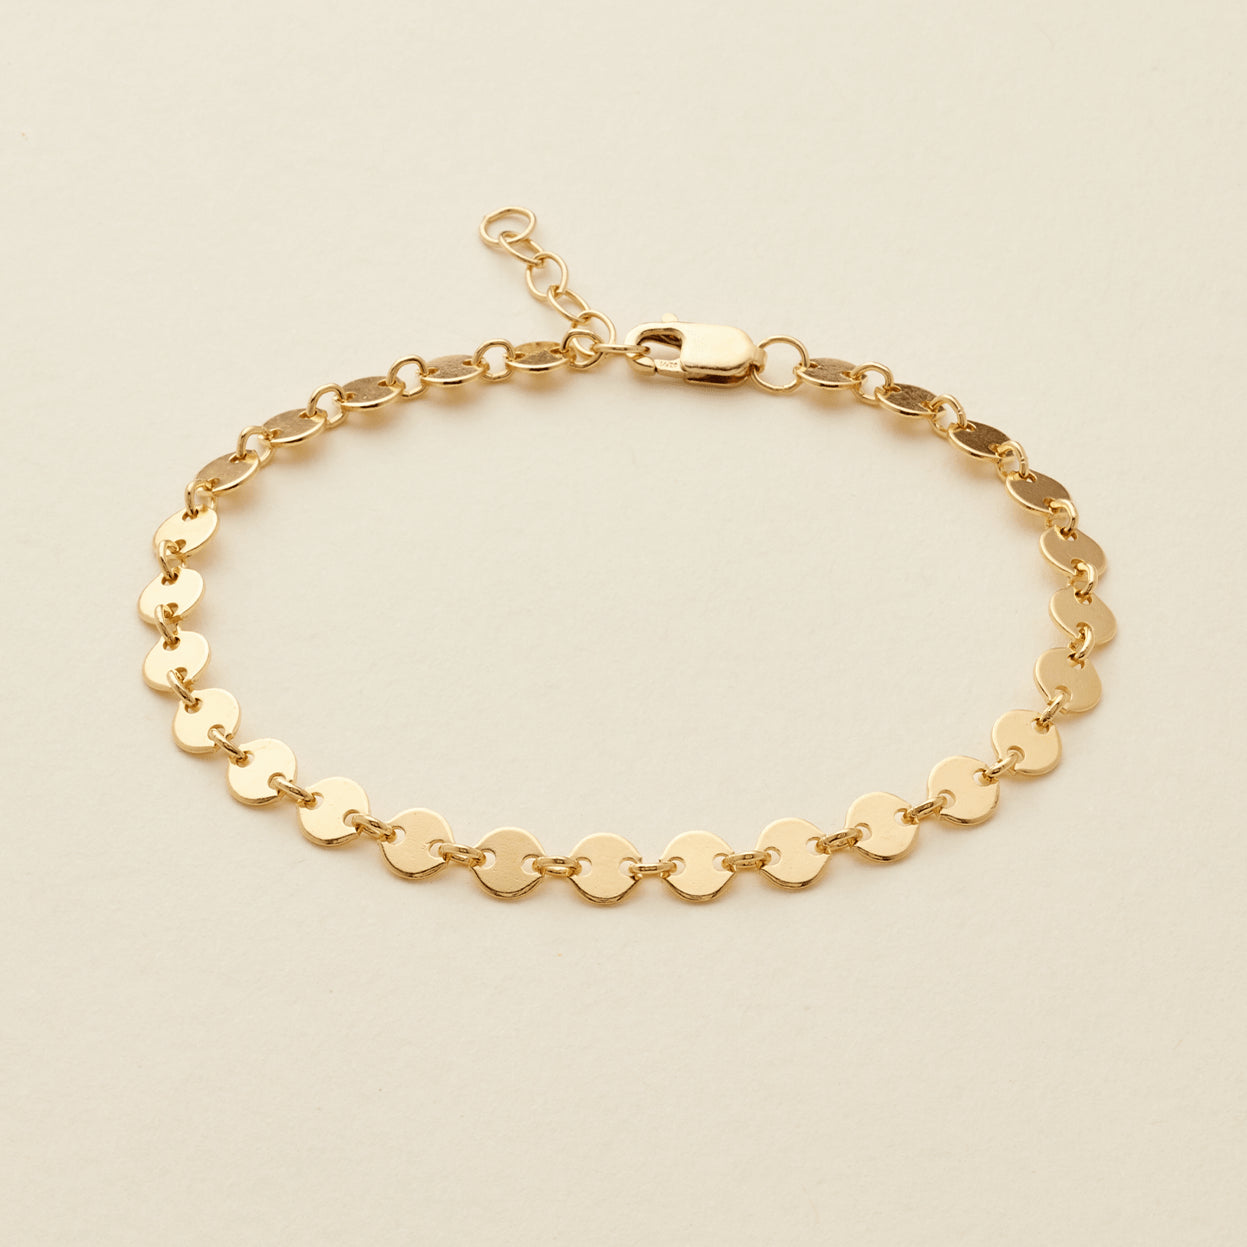 Poppy Bracelet Gold Filled / 5.5" Bracelet